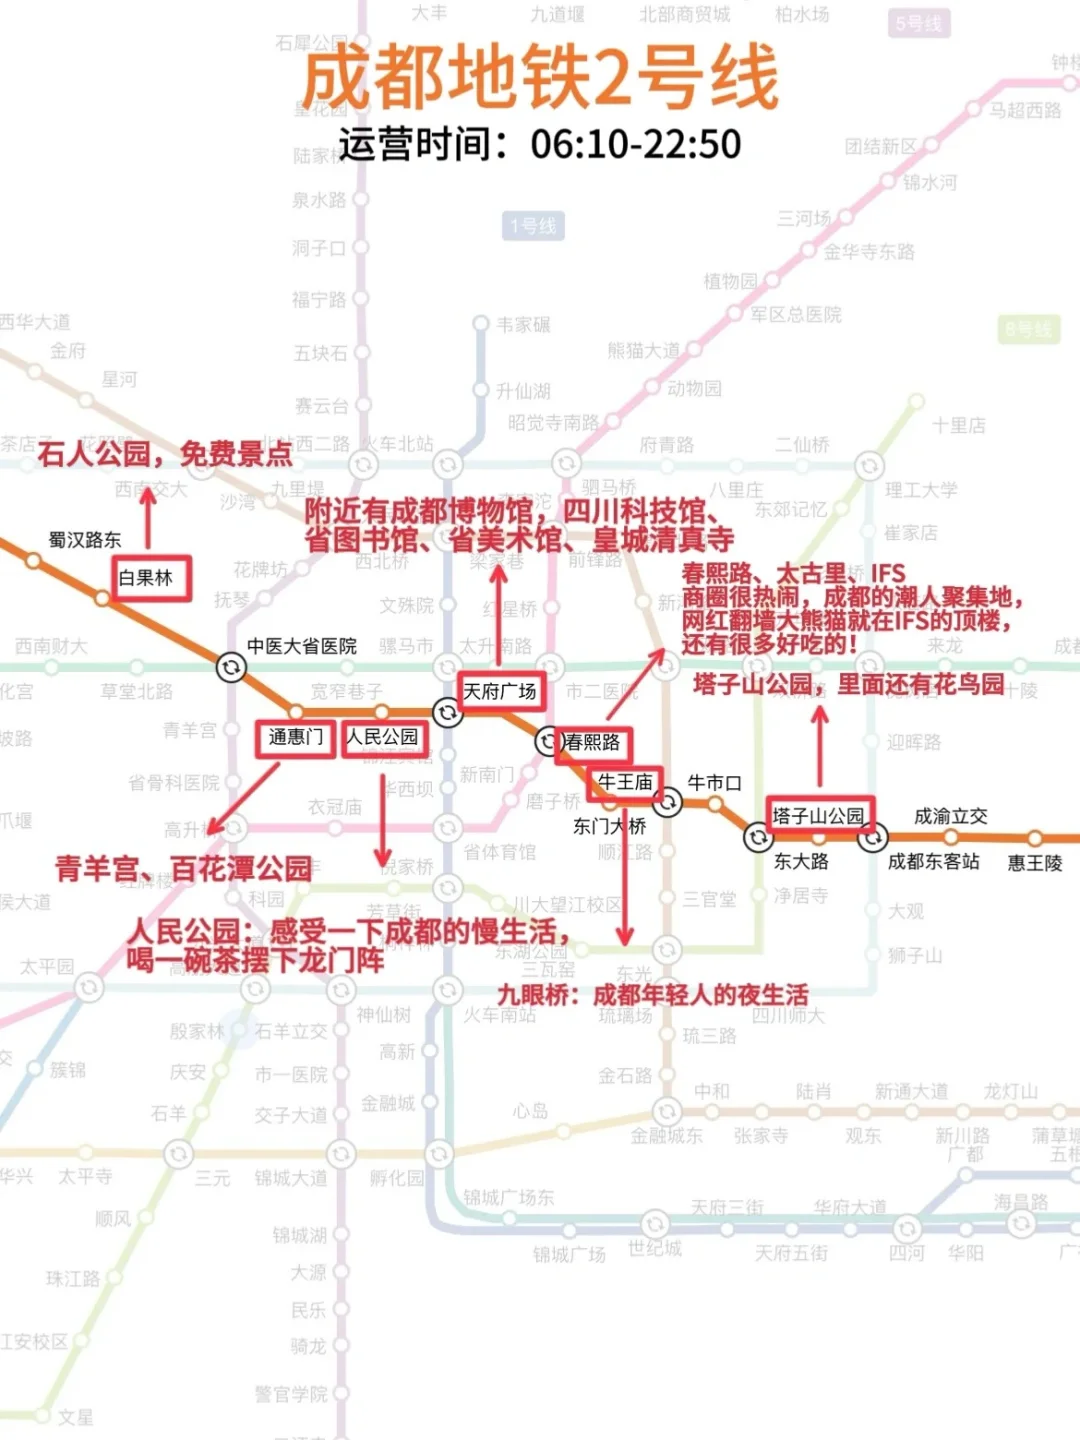 线规划:day1:春熙路——ifs国金中心——太古里——成都博物馆